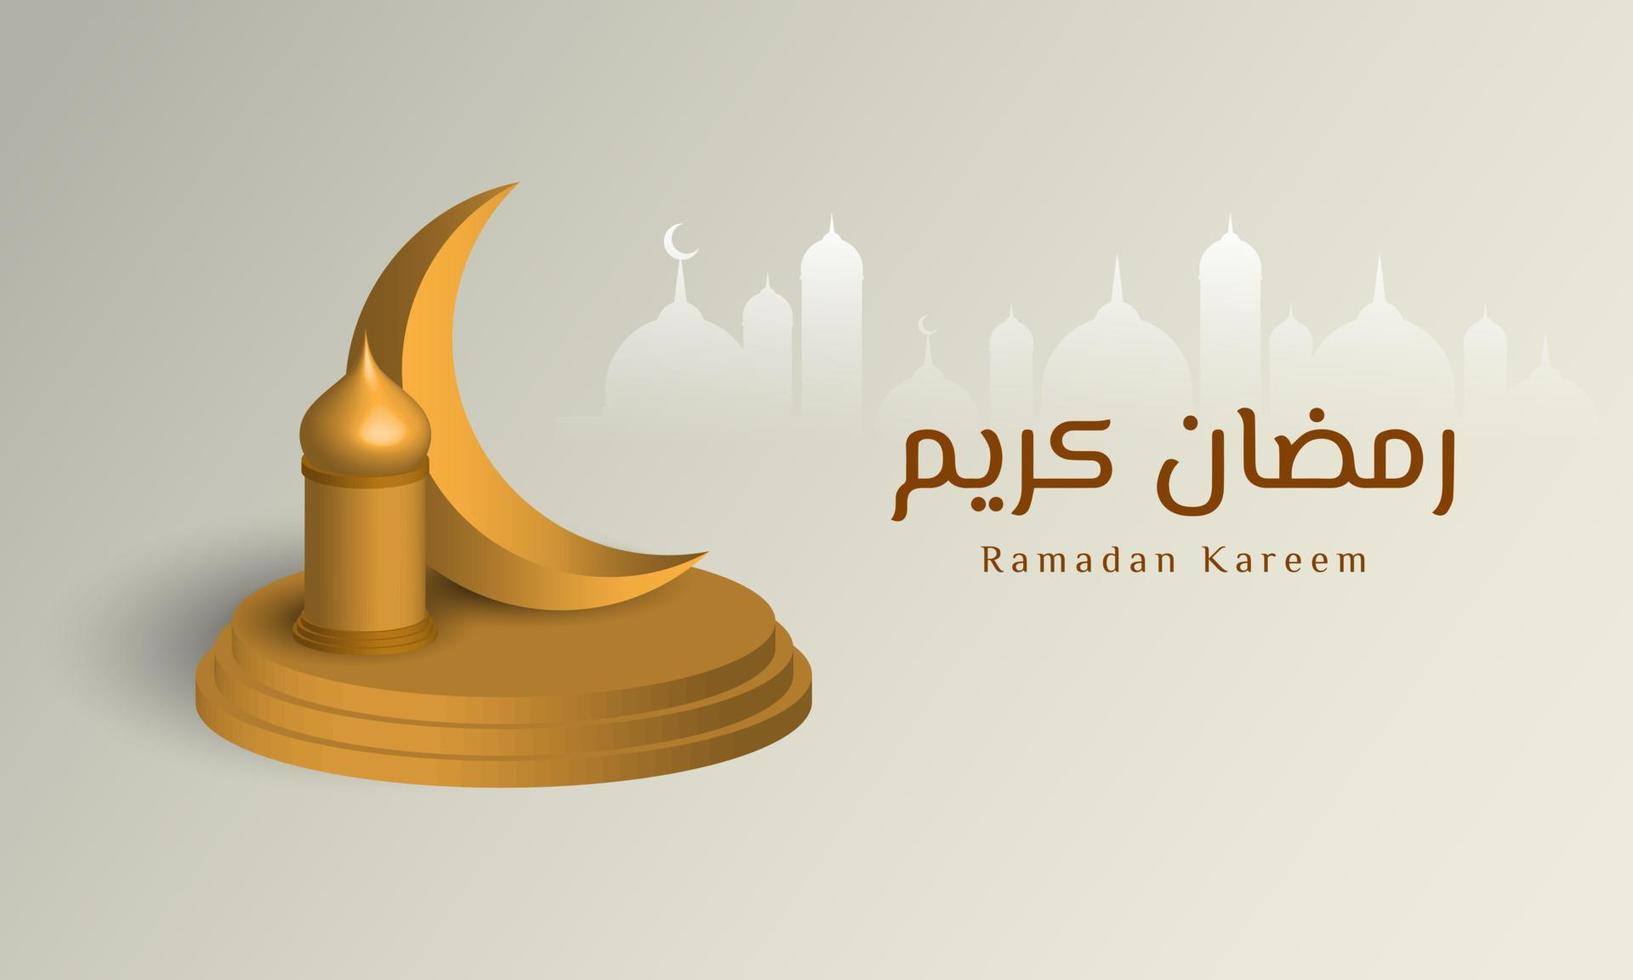 Ramadan Kareem Background Design. vector